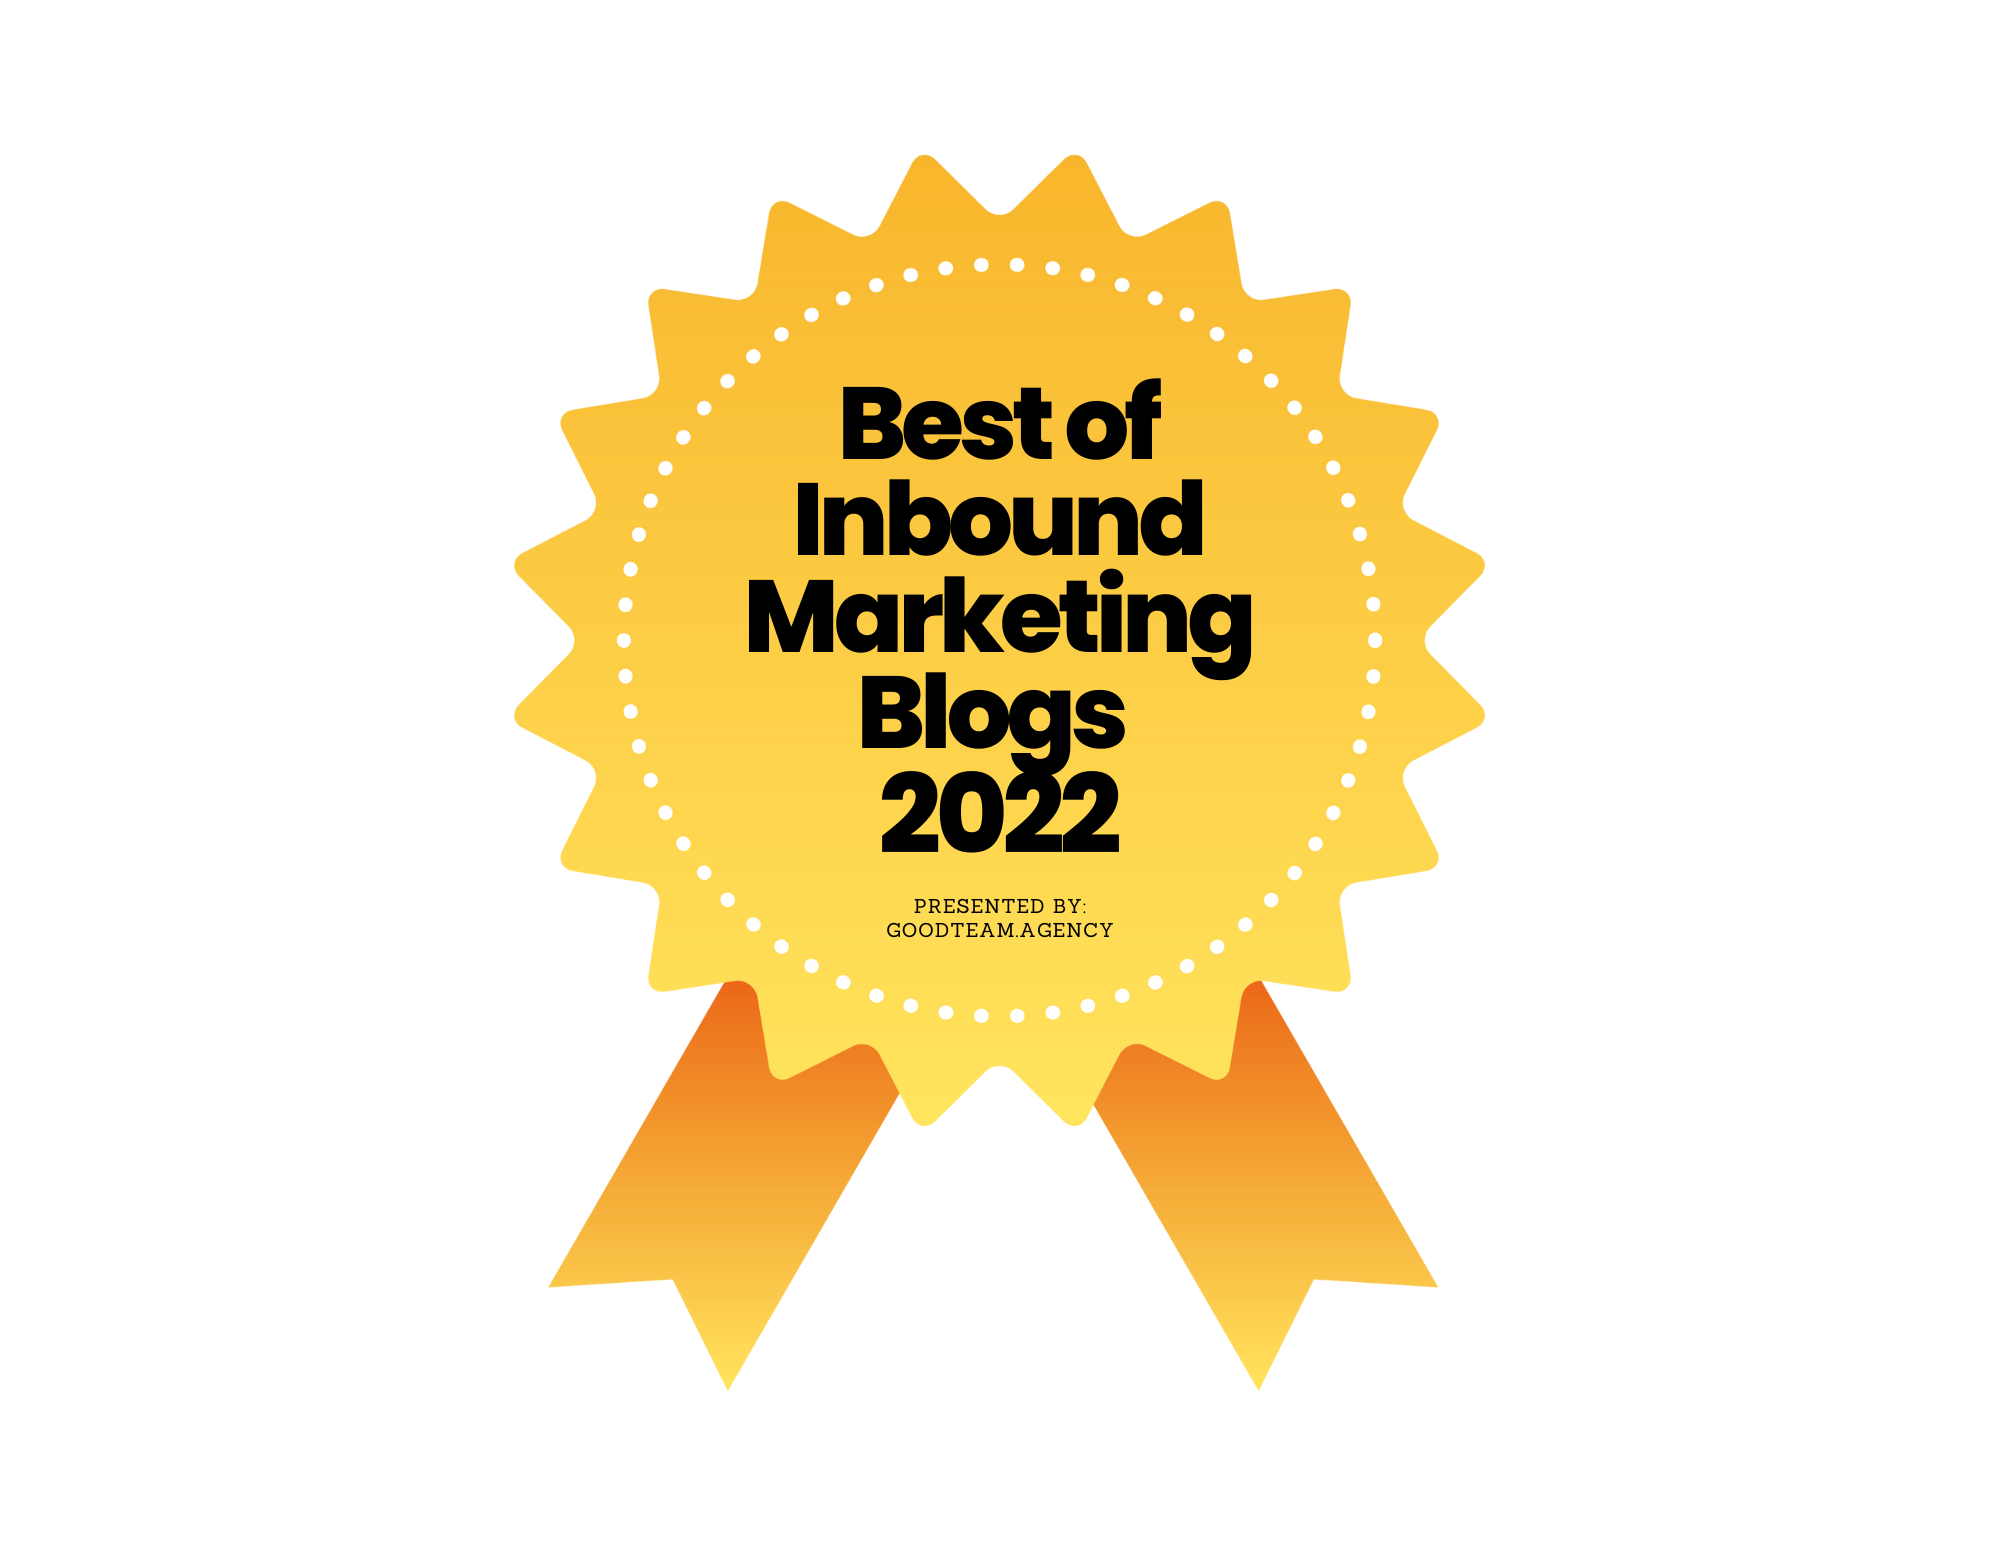 Best of Inbound Marketing Blogs 2022